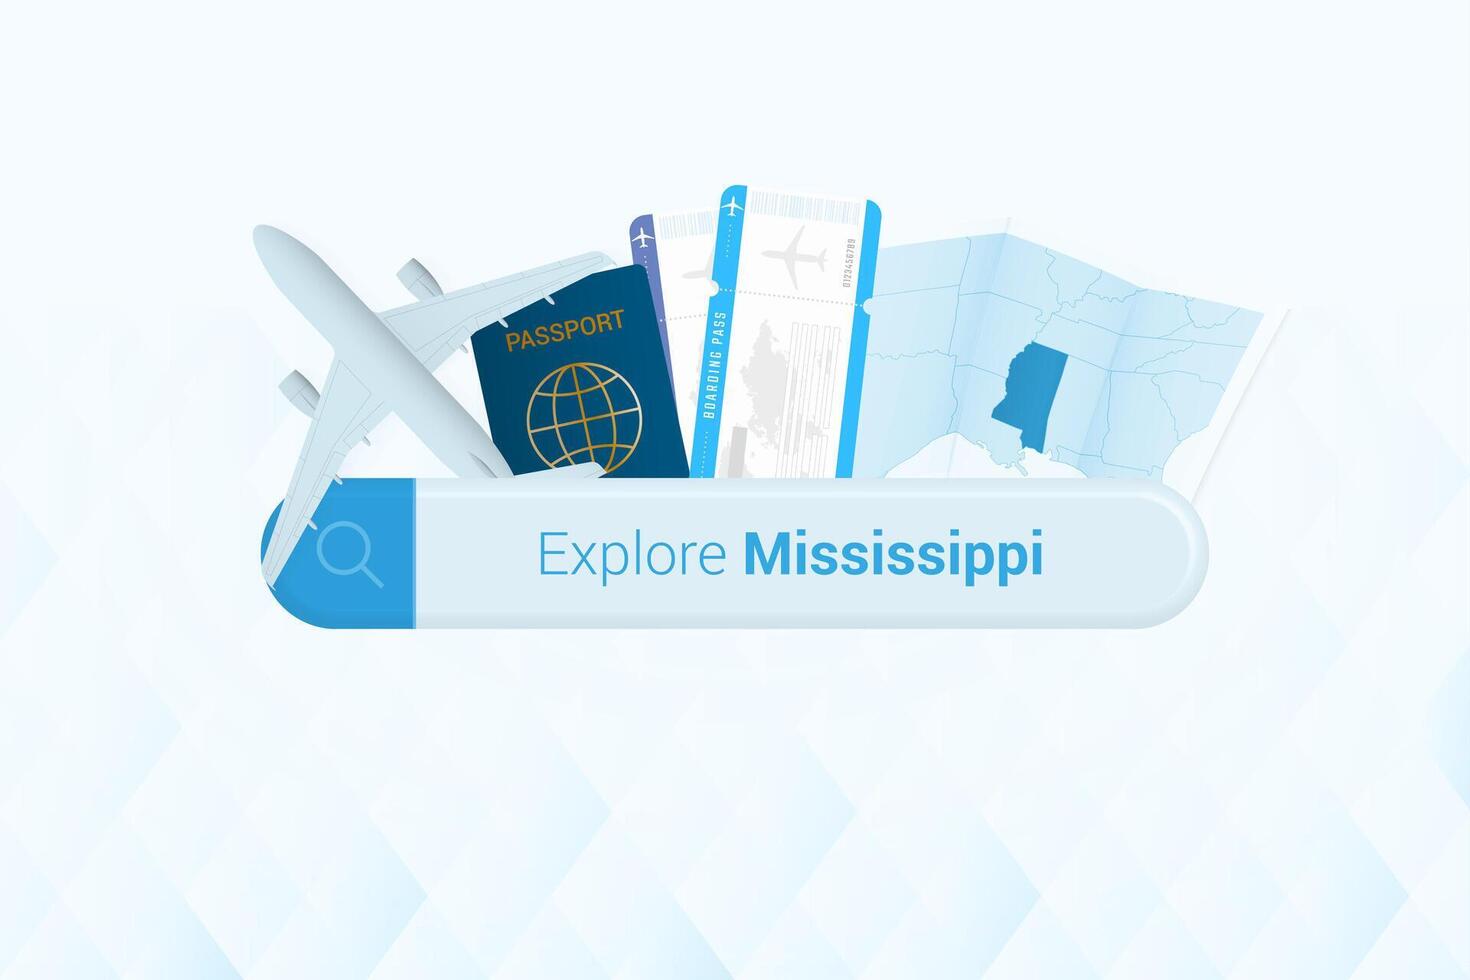 buscando Entradas a Misisipí o viaje destino en Misisipí. buscando bar con avión, pasaporte, embarque aprobar, Entradas y mapa. vector